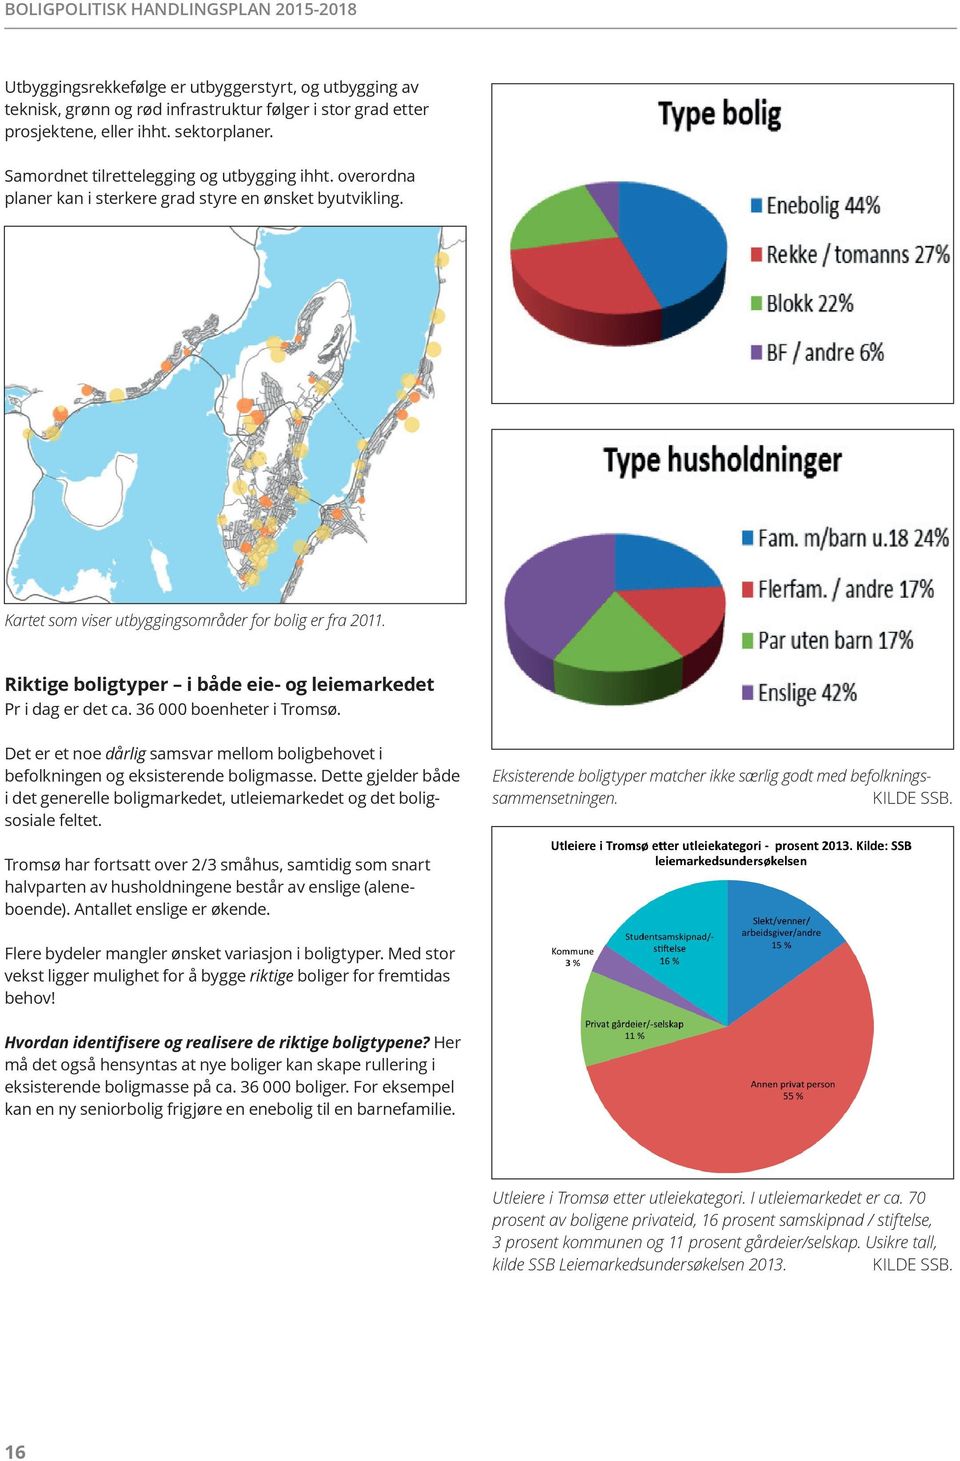 Riktige boligtyper i både eie- og leiemarkedet Pr i dag er det ca. 36 000 boenheter i Tromsø. Det er et noe dårlig samsvar mellom boligbehovet i befolkningen og eksisterende boligmasse.